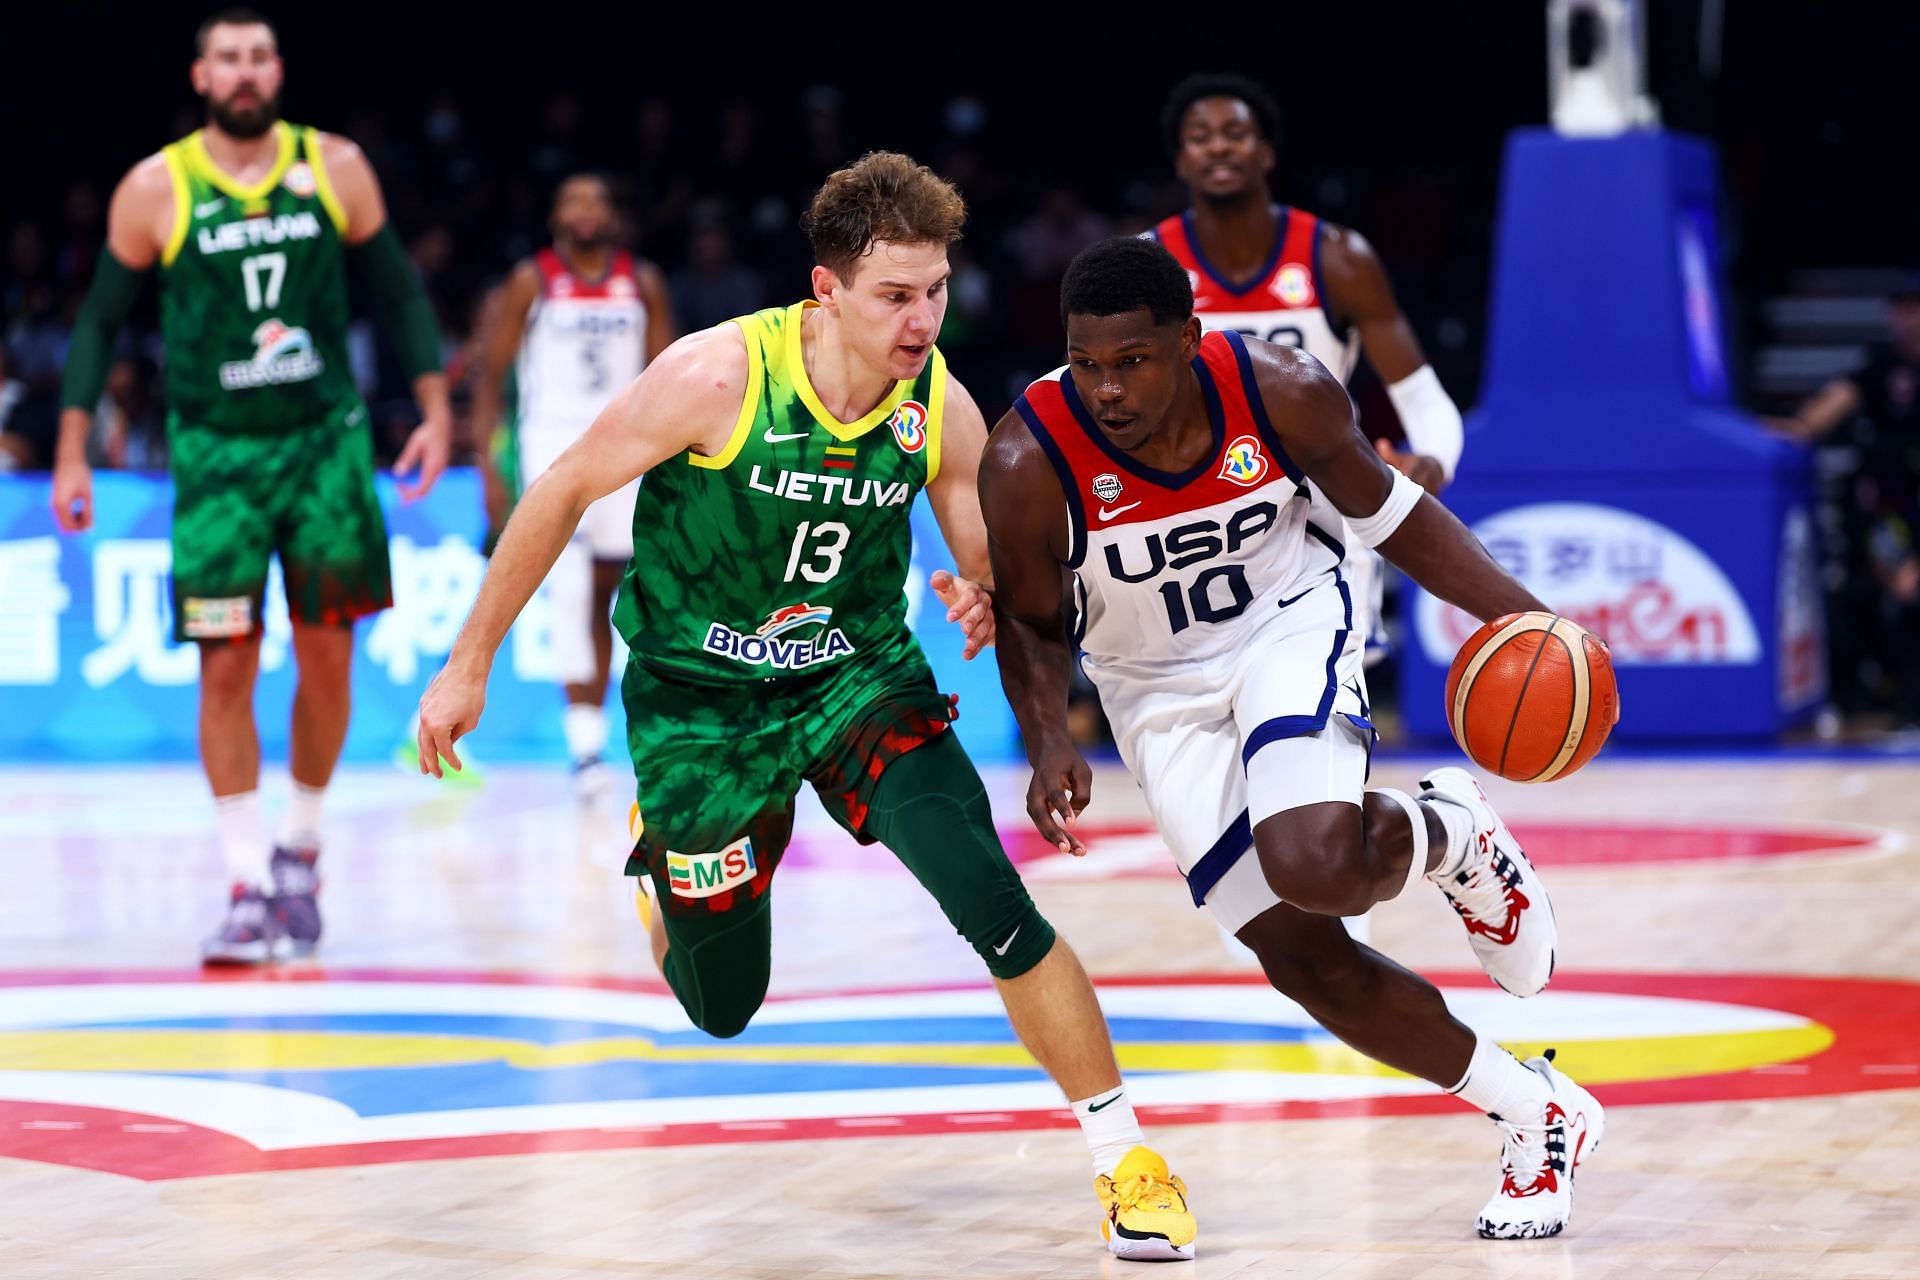 USA v Lithuania: Group J - FIBA Basketball World Cup